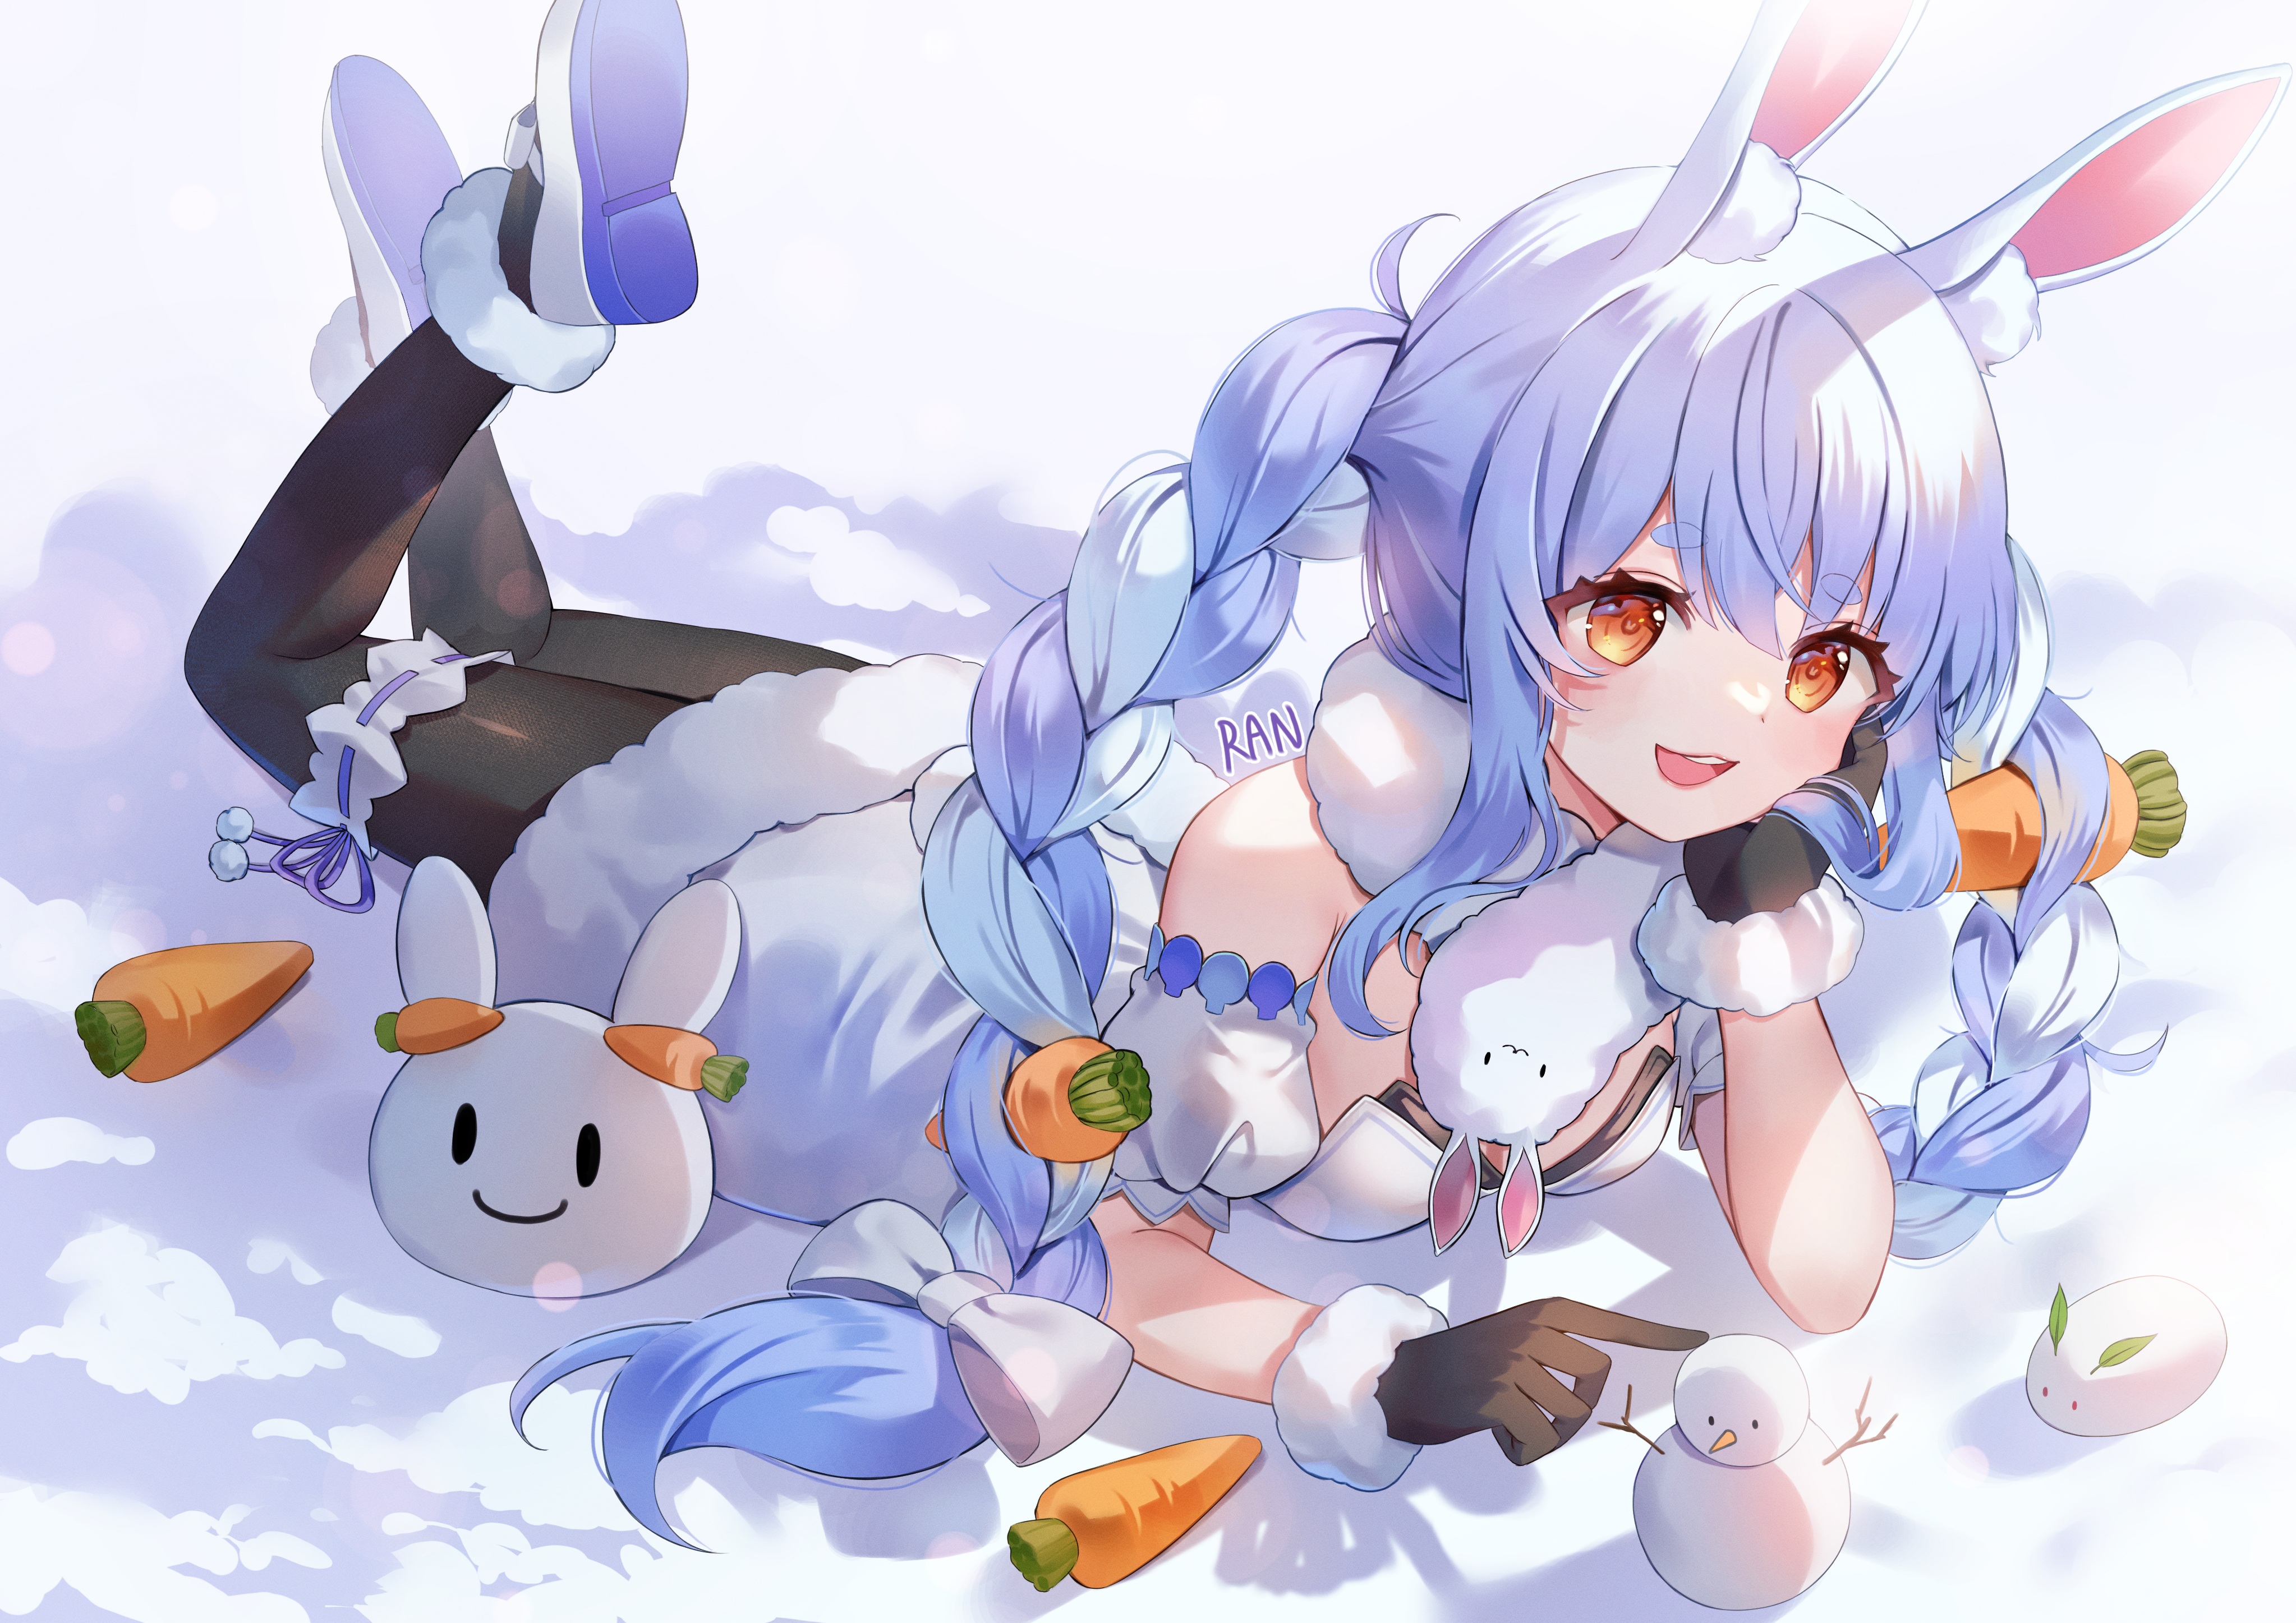 Anime 4093x2894 anime anime girls Ranchan artwork Hololive Usada Pekora bunny girl braids snow